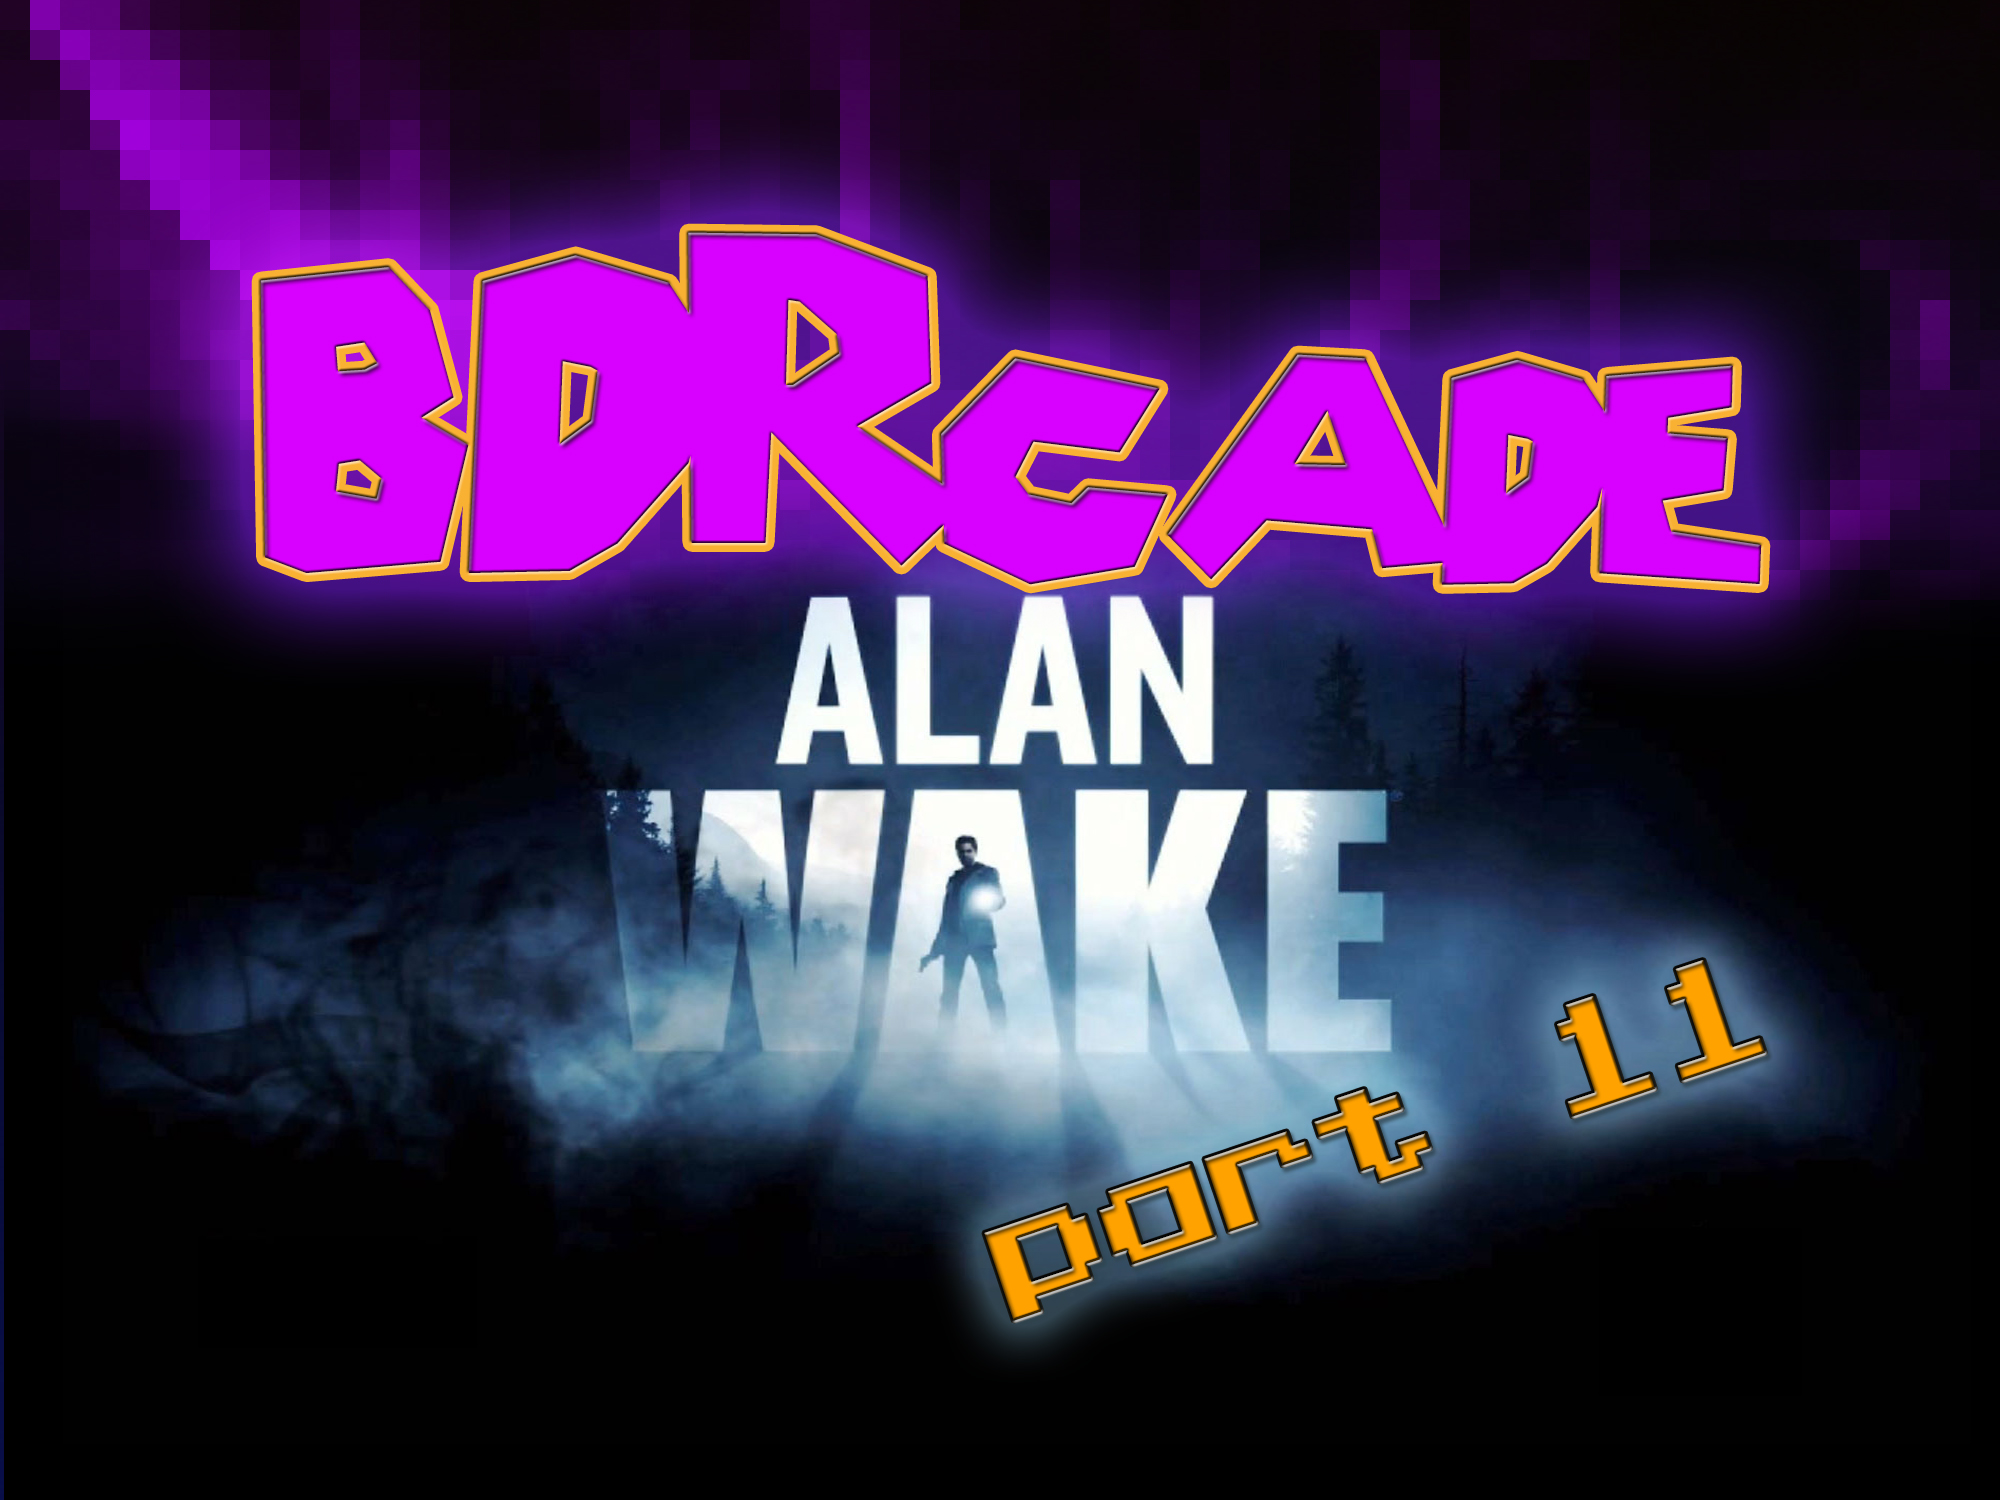 Alan Wake: Bird Murderer – PART 11 – BDRcade